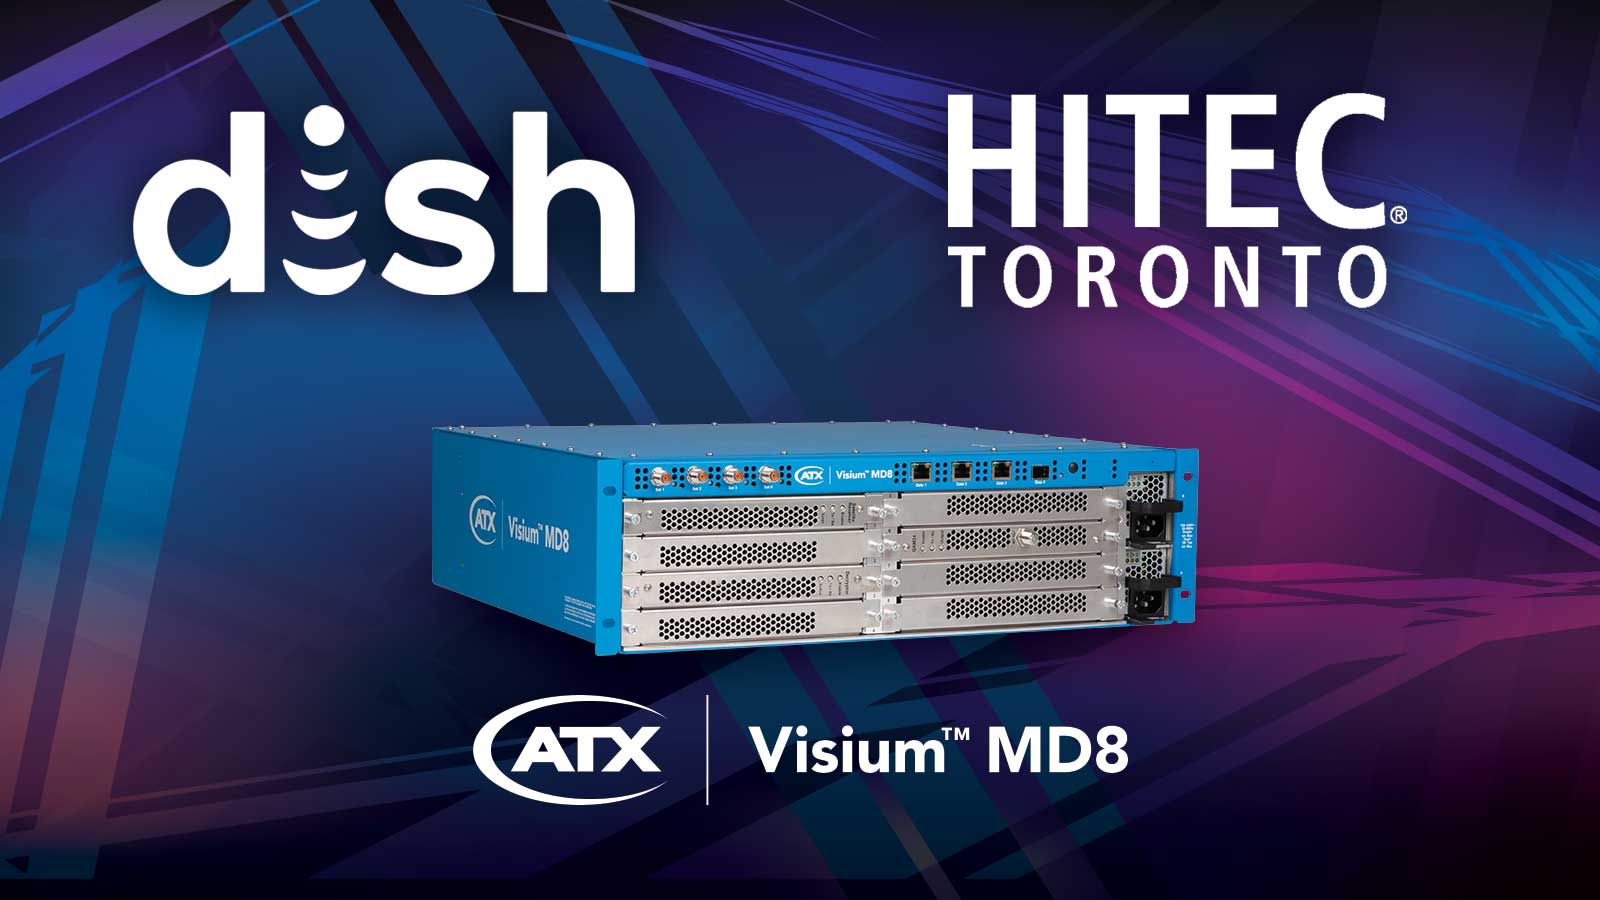 Dish logo, HITEC Toronto logo, ATX MD8